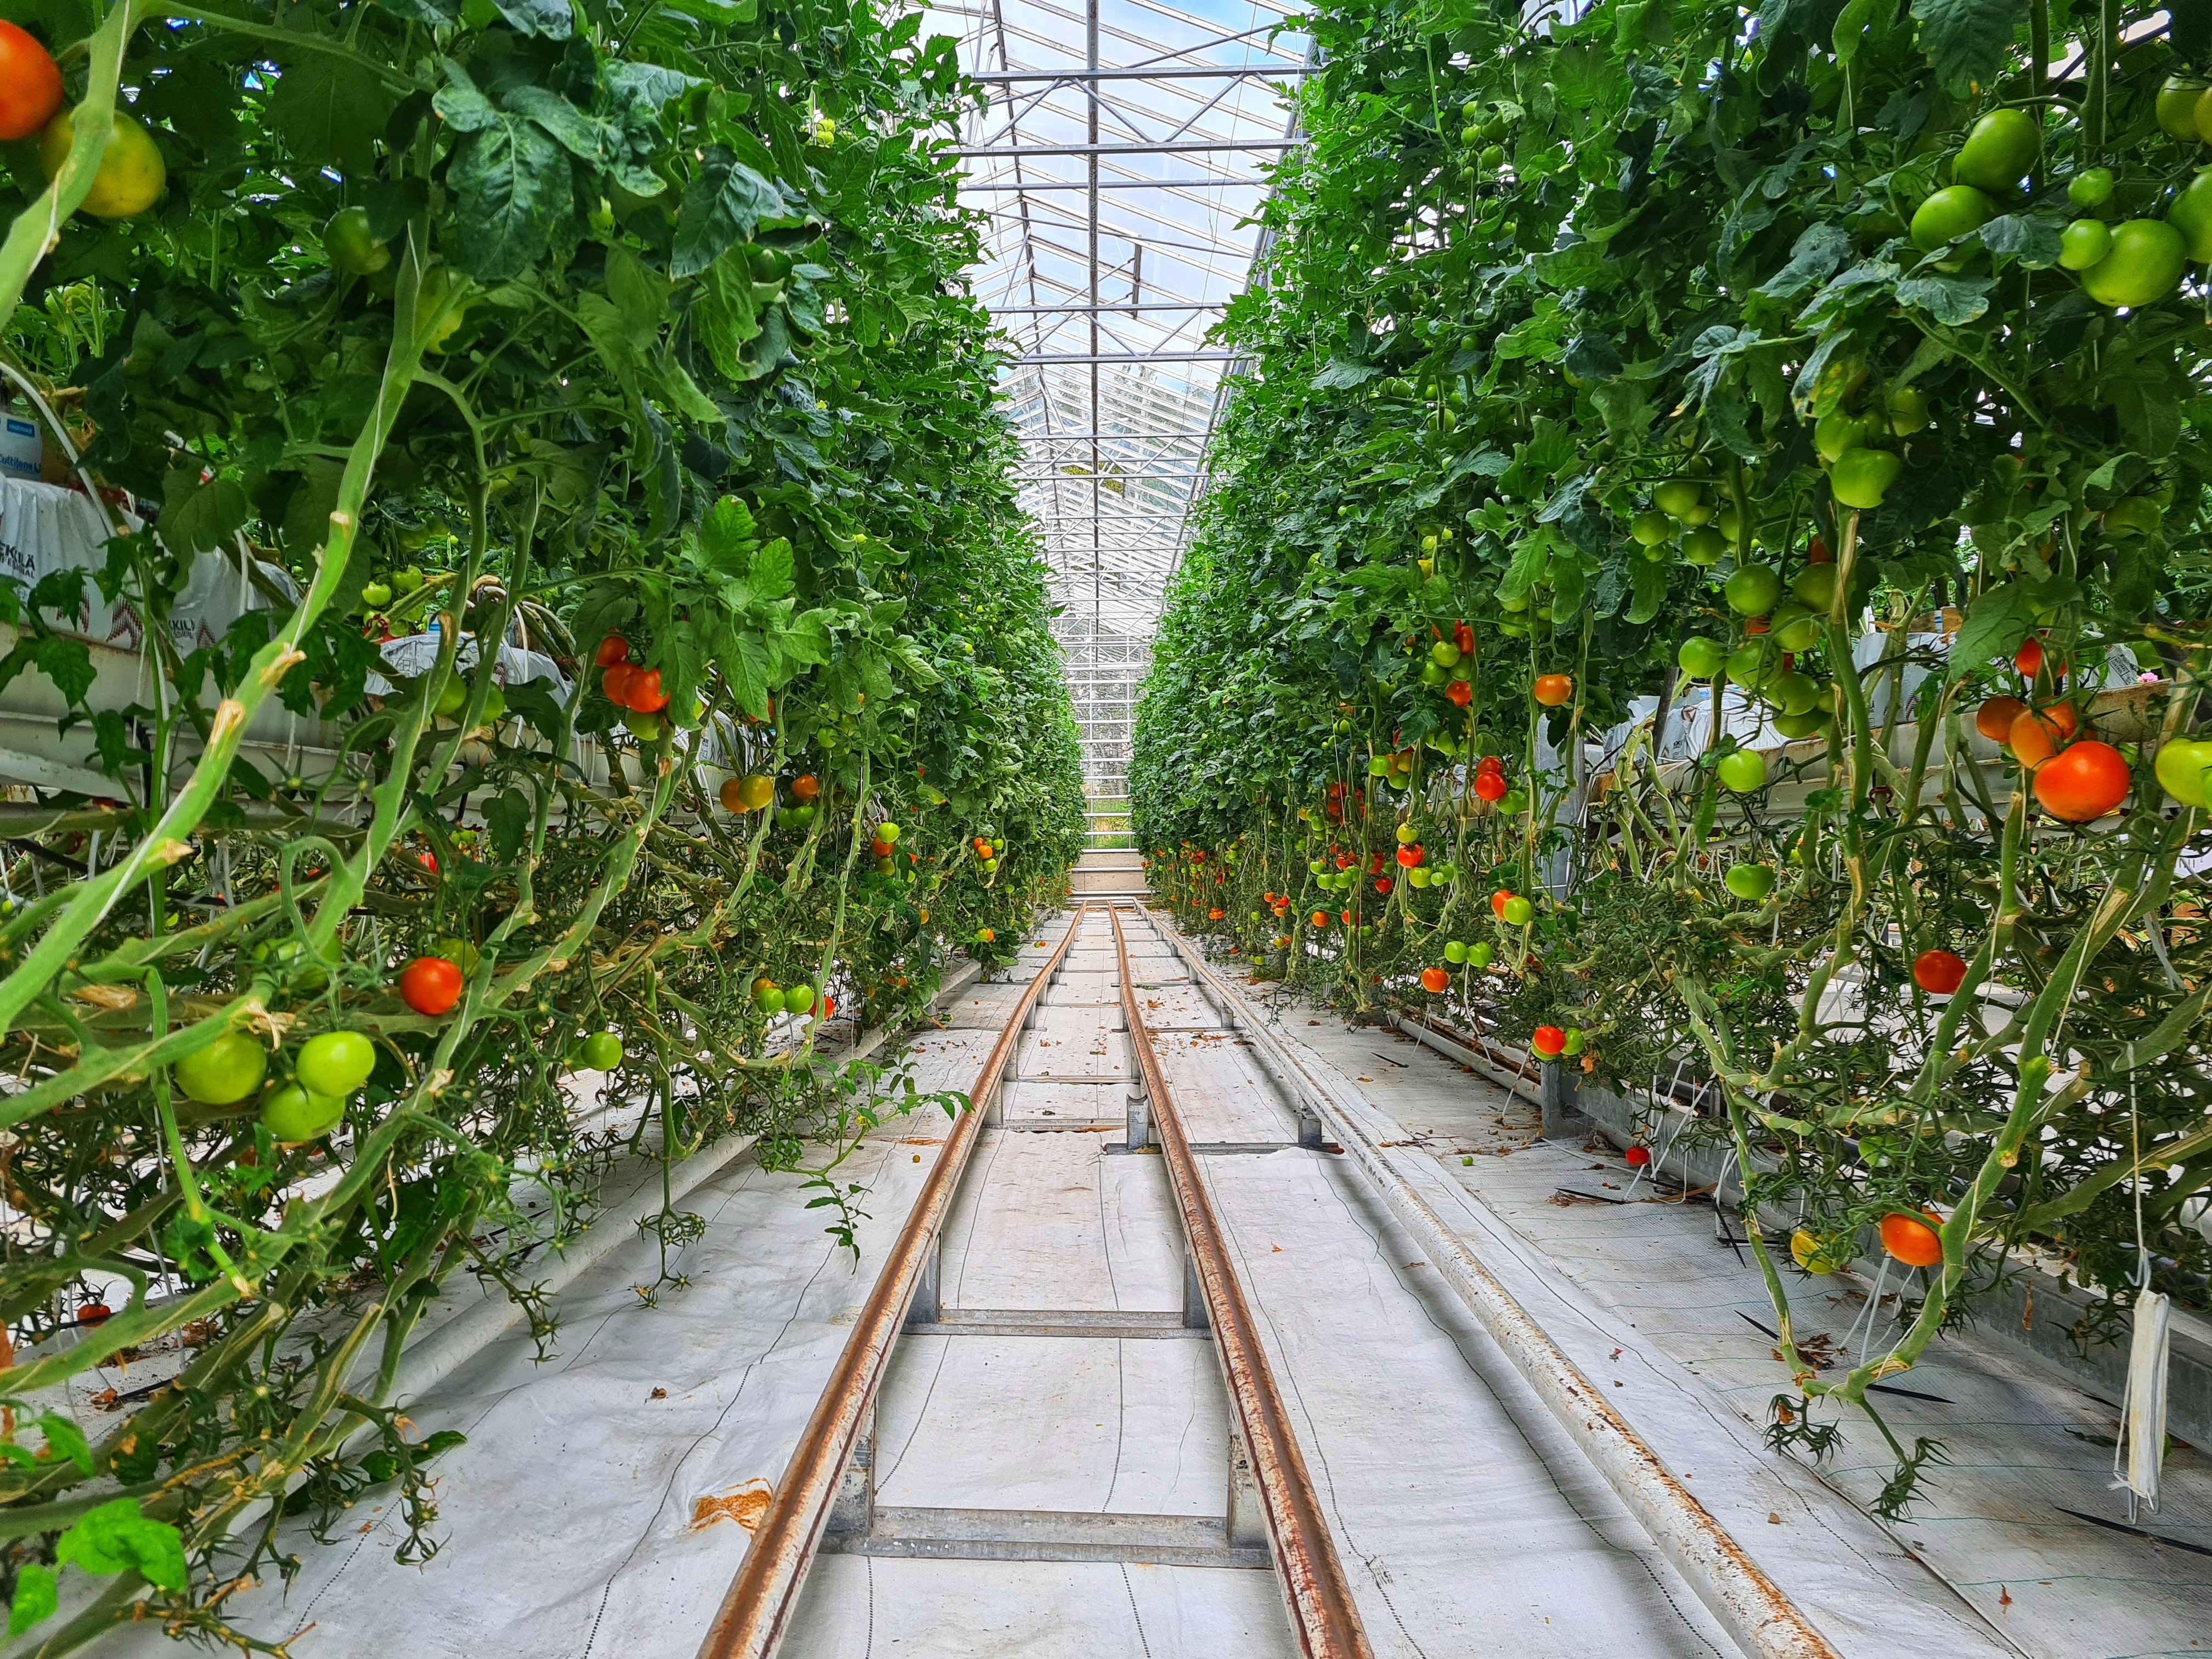 Technologieentwicklung für den Anbau von Bio-Gemüse丨Aixiang konzentriert sich auf den Bau und das Design von Gewächshäusern